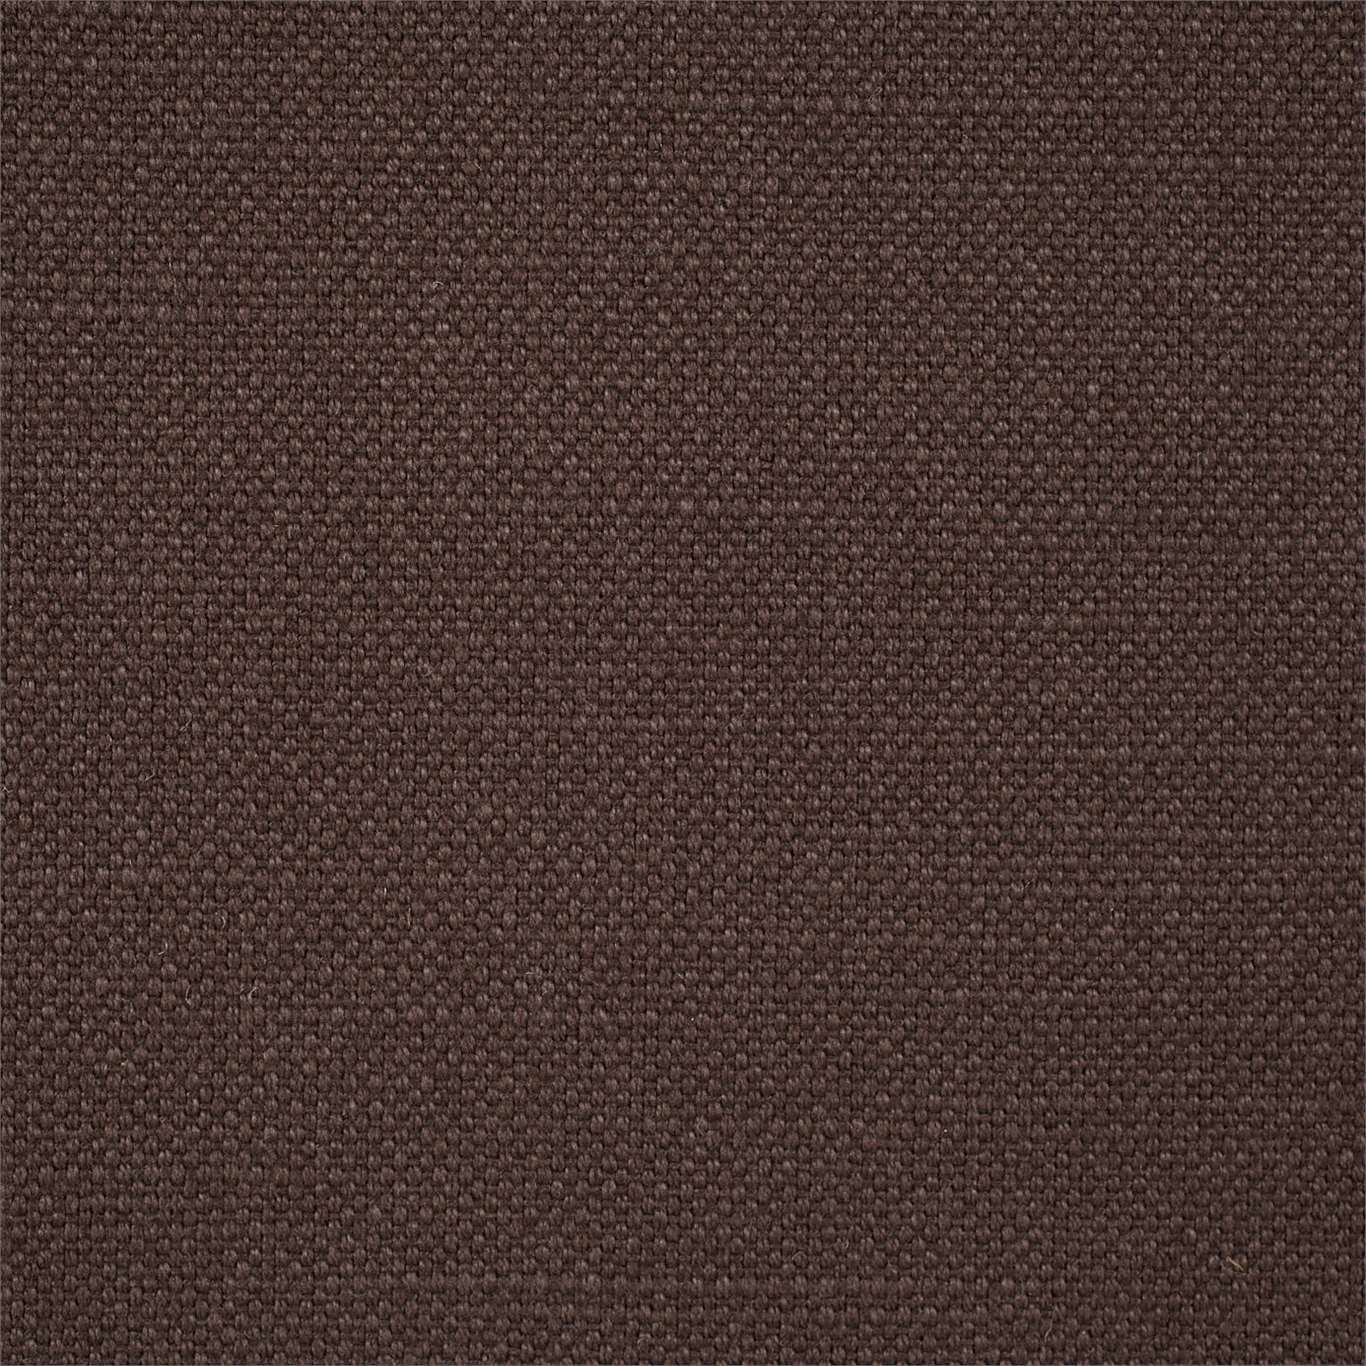 Arley Fabric by Sanderson - DALY245831 - Espresso